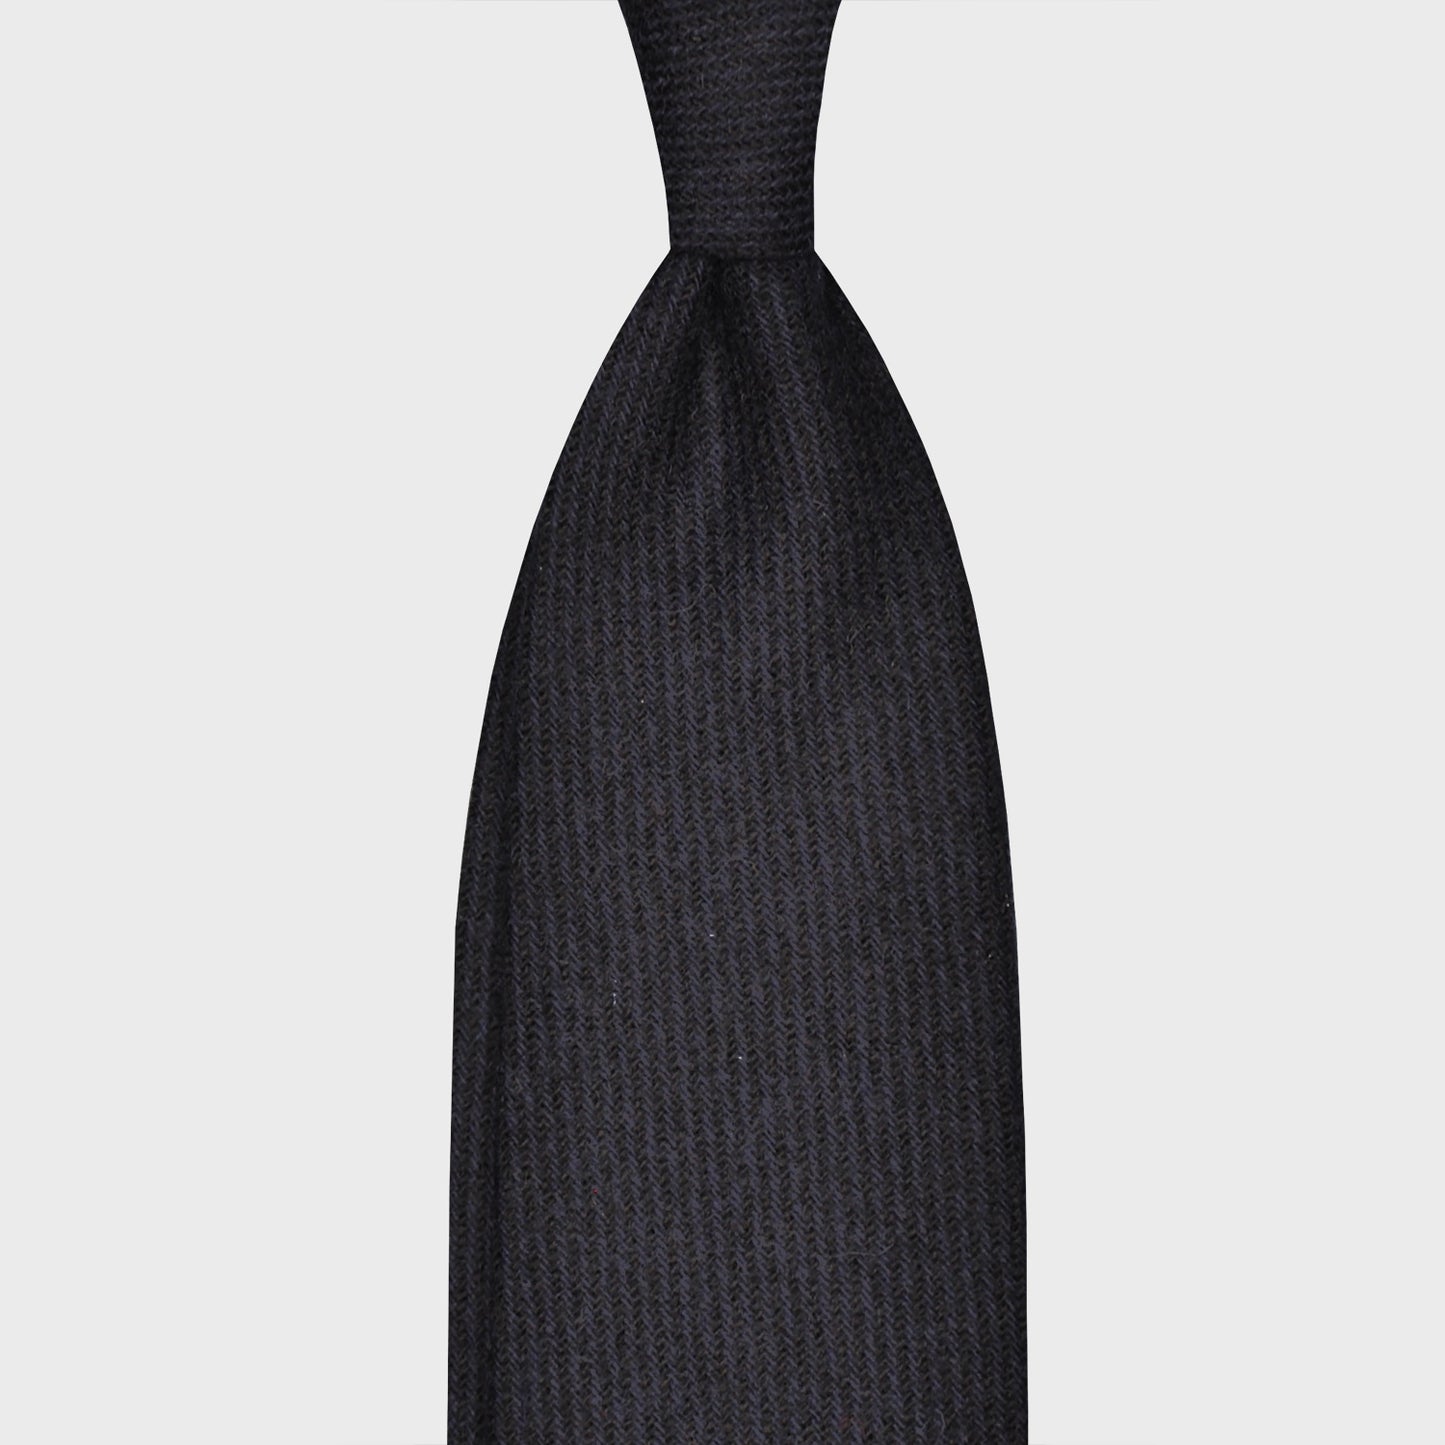 F.Marino Tweed Tie 3 Folds Dark Blue-Wools Boutique Uomo